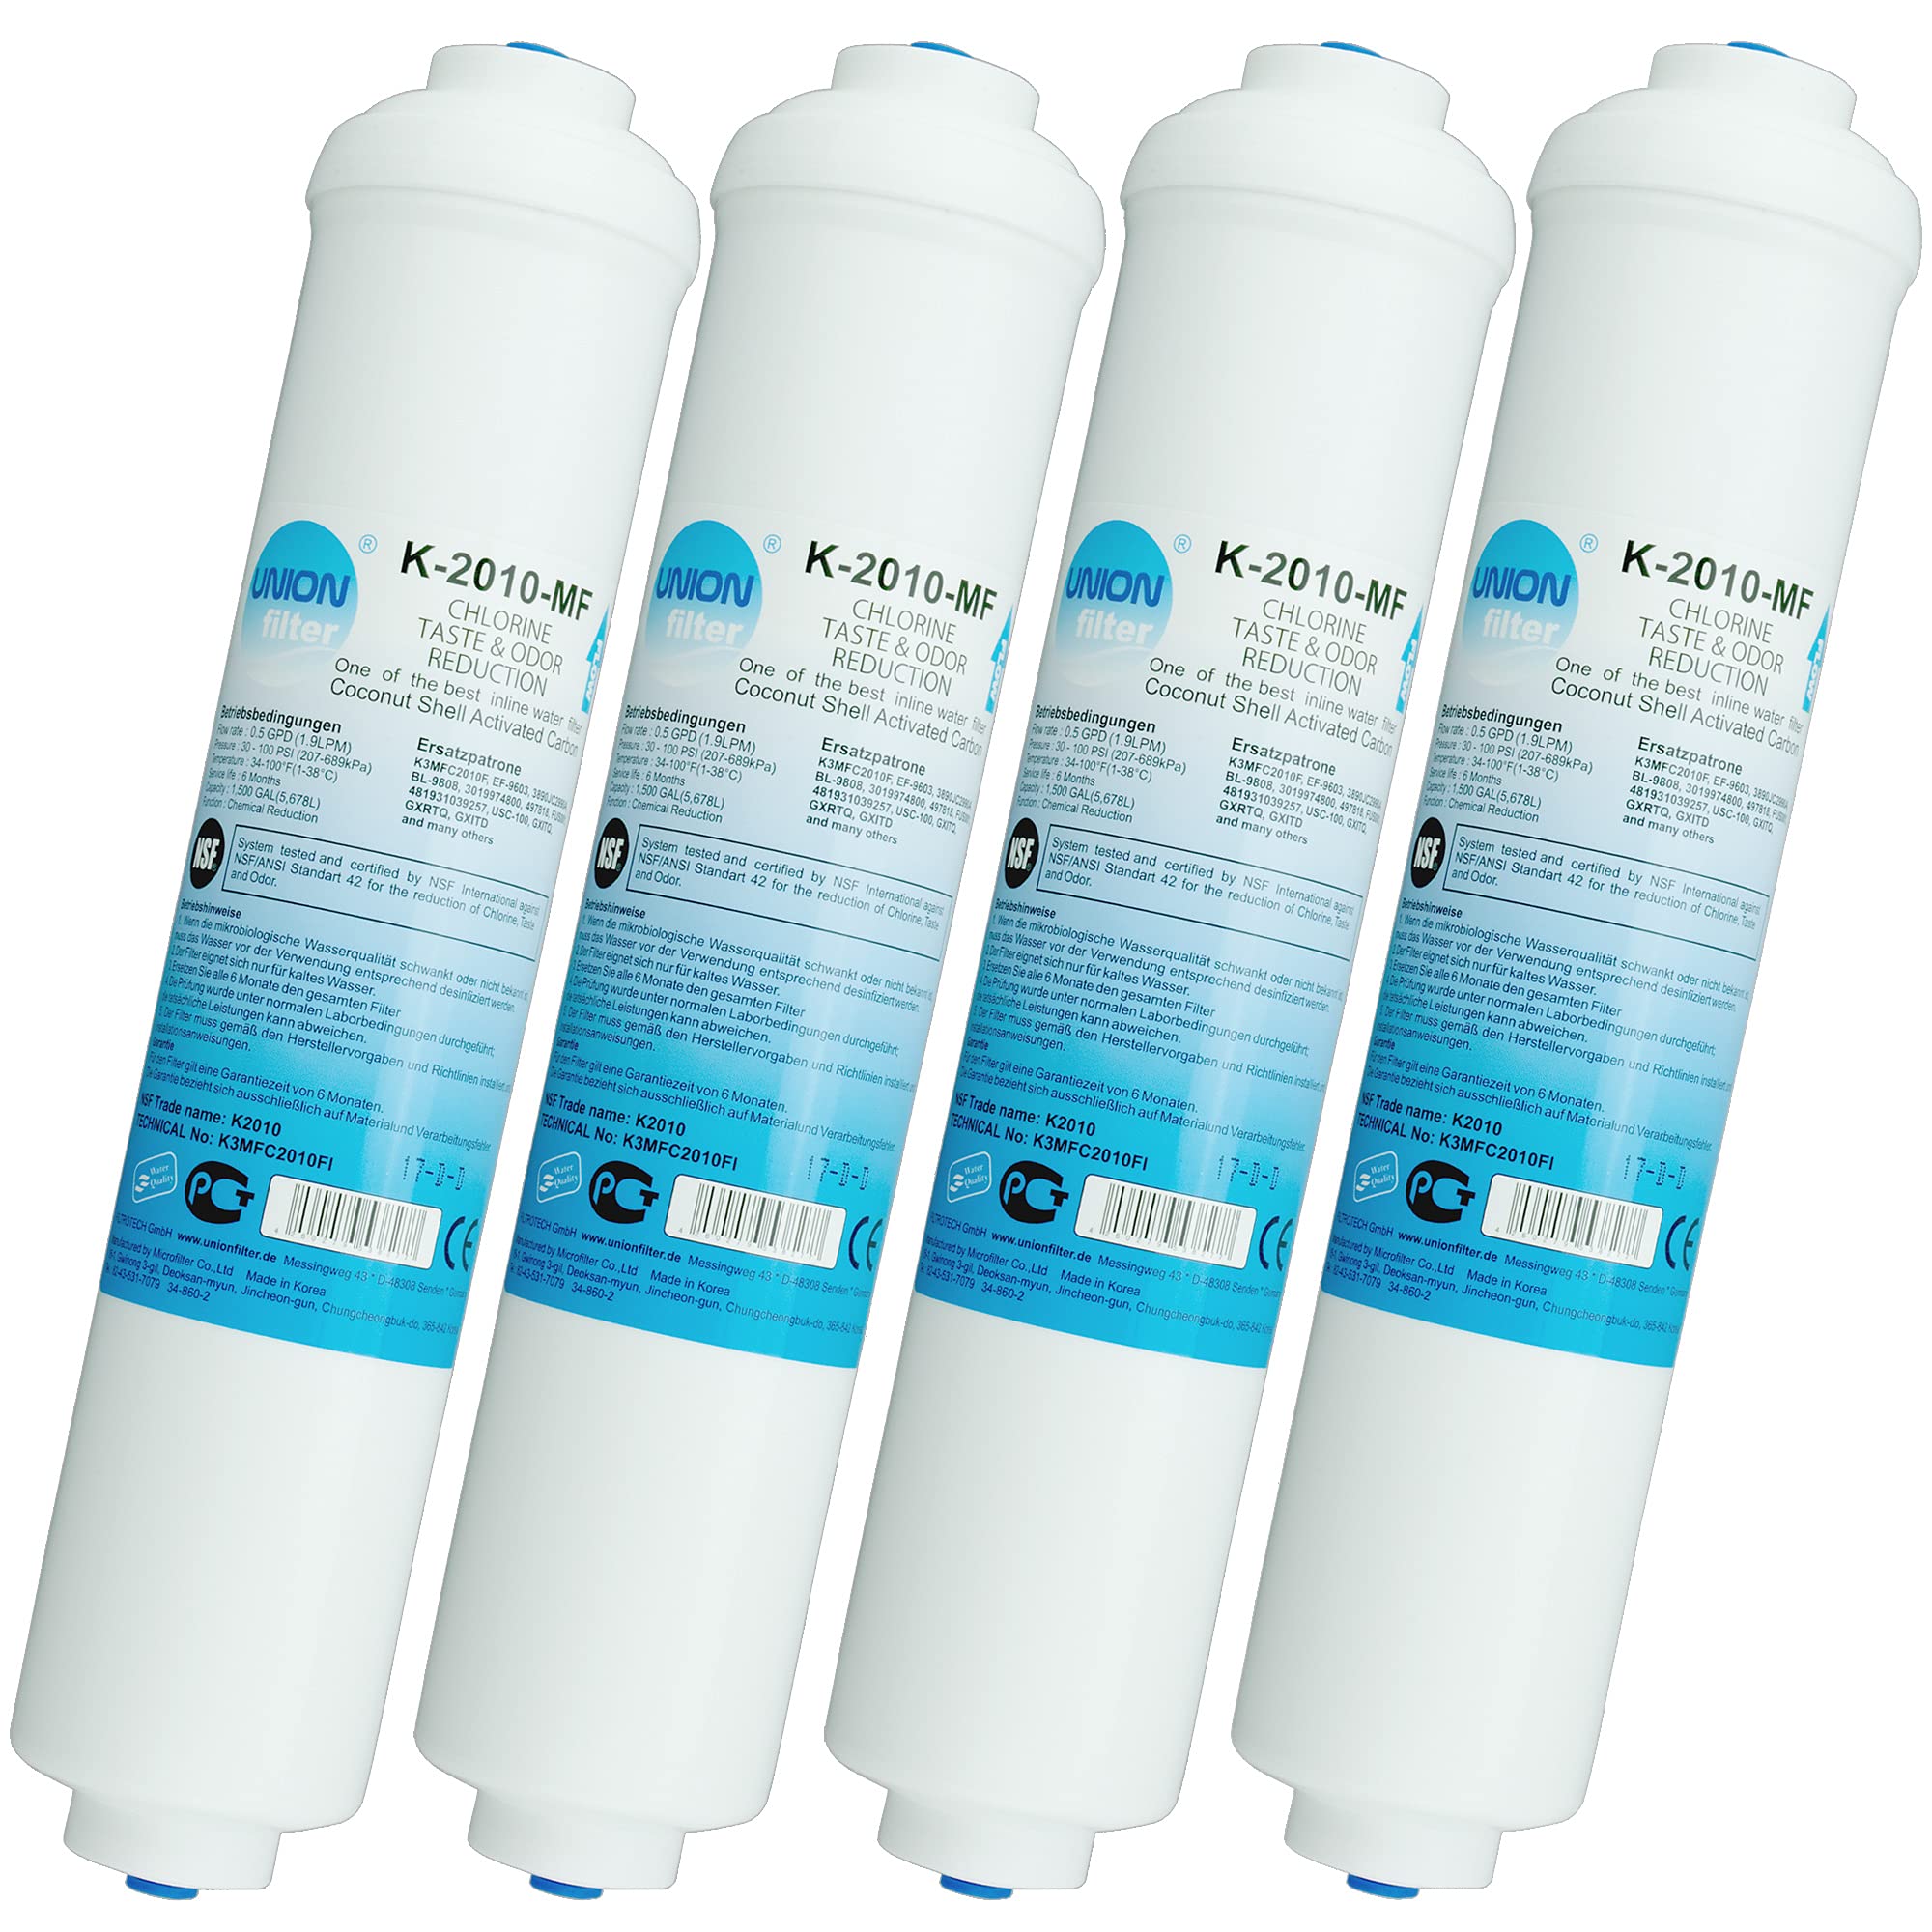 Wasserfilter für Samsung, LG, Side by Side Kühlschrank Filter extern. Schlauchanschluss ist fest integriert. 4-er Pack